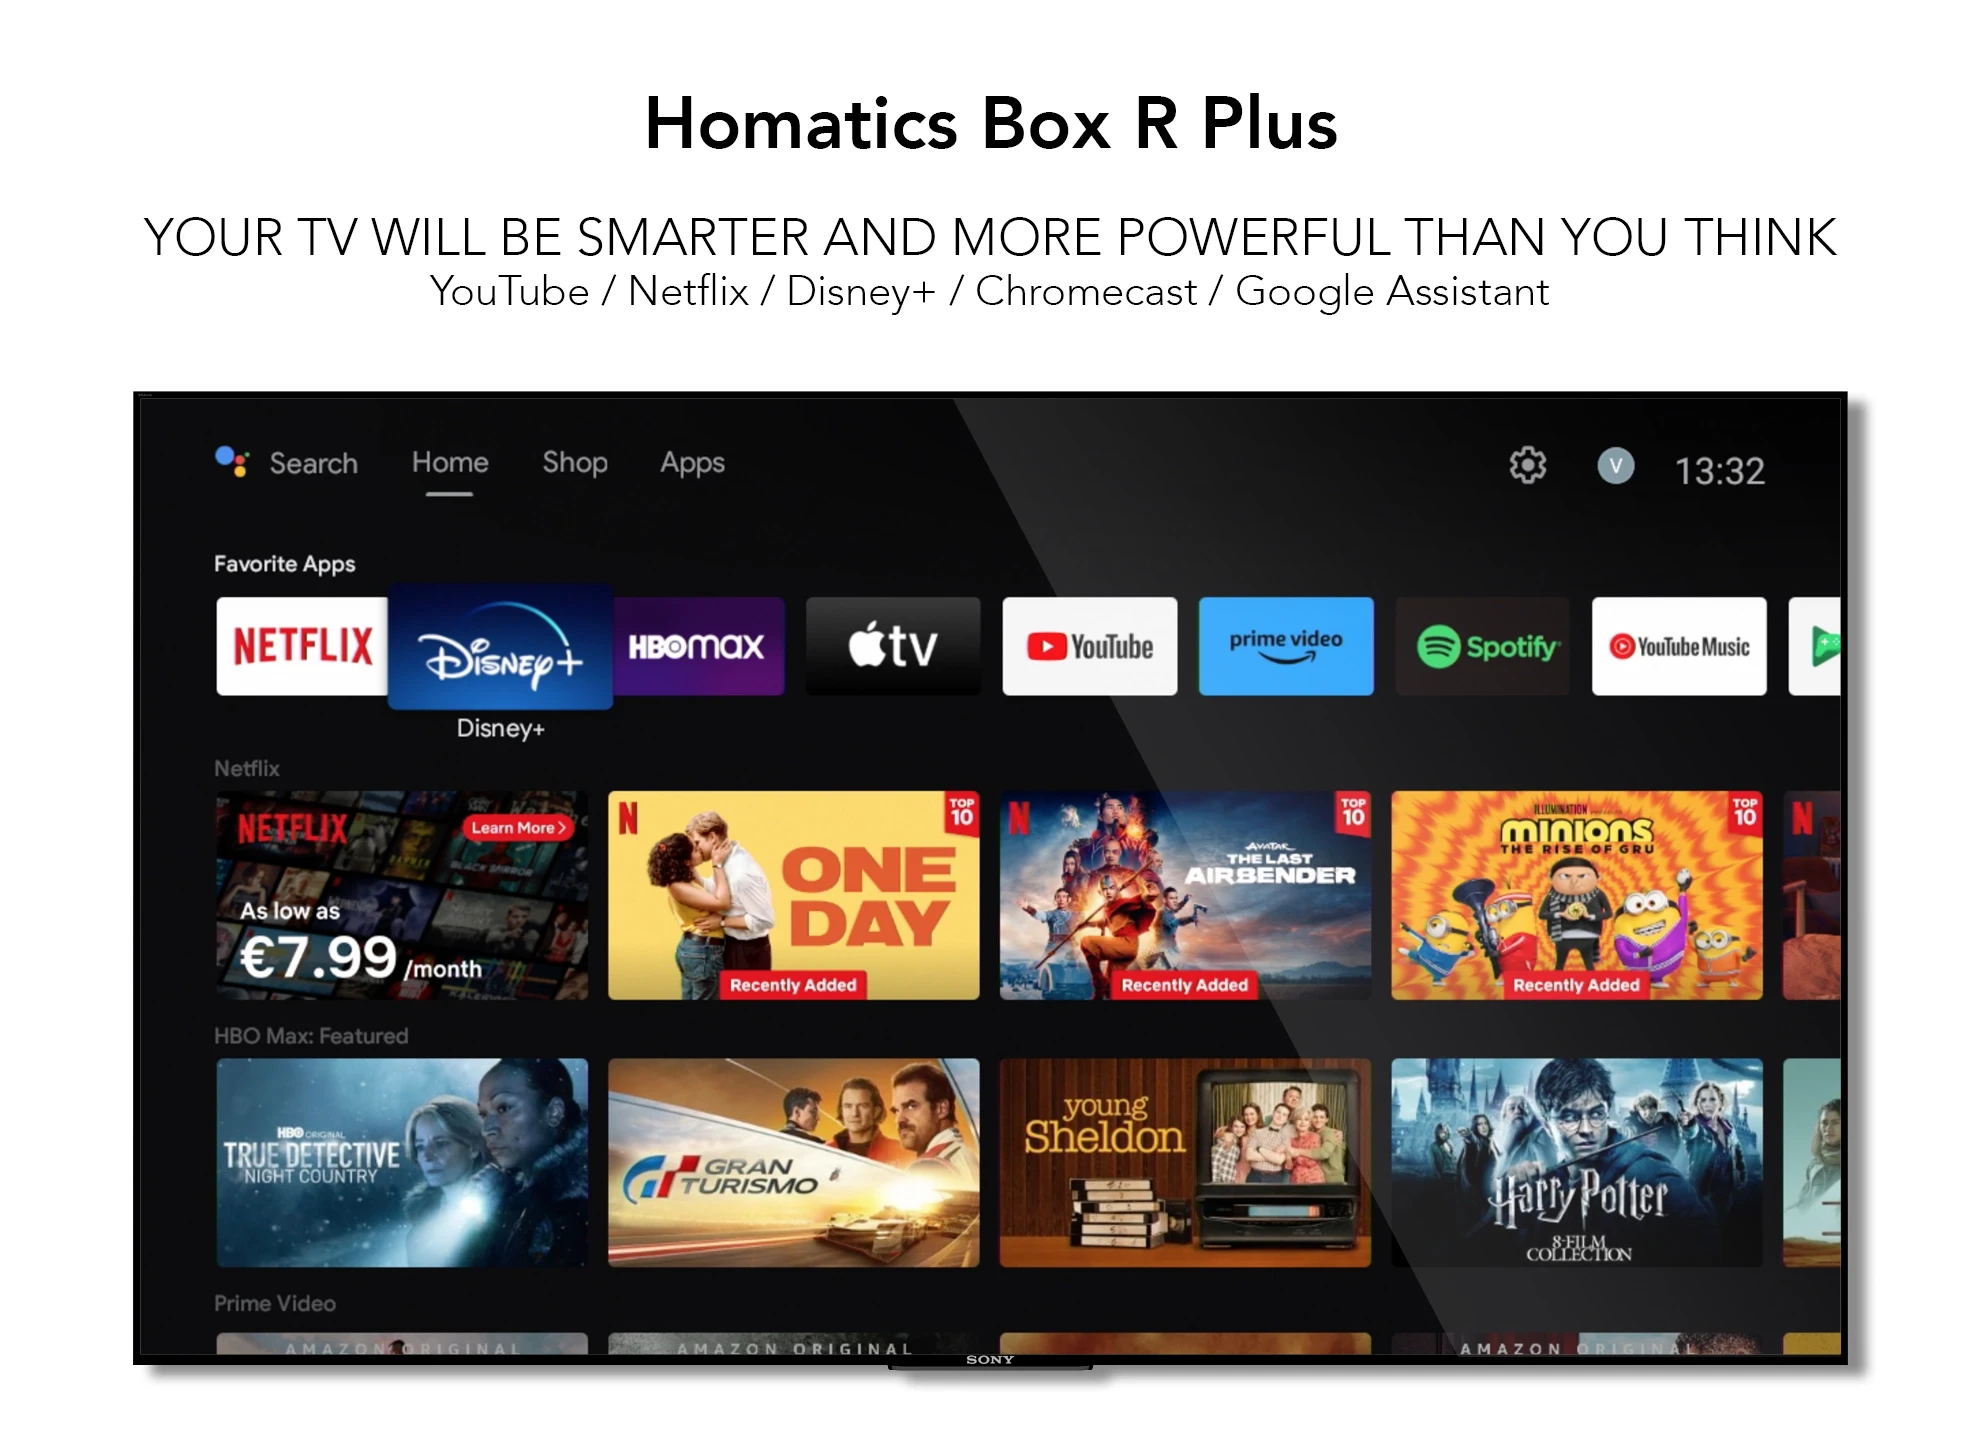 Homatics Box R 4K Plus 4GB/32GB Wifi 6 - Android TV